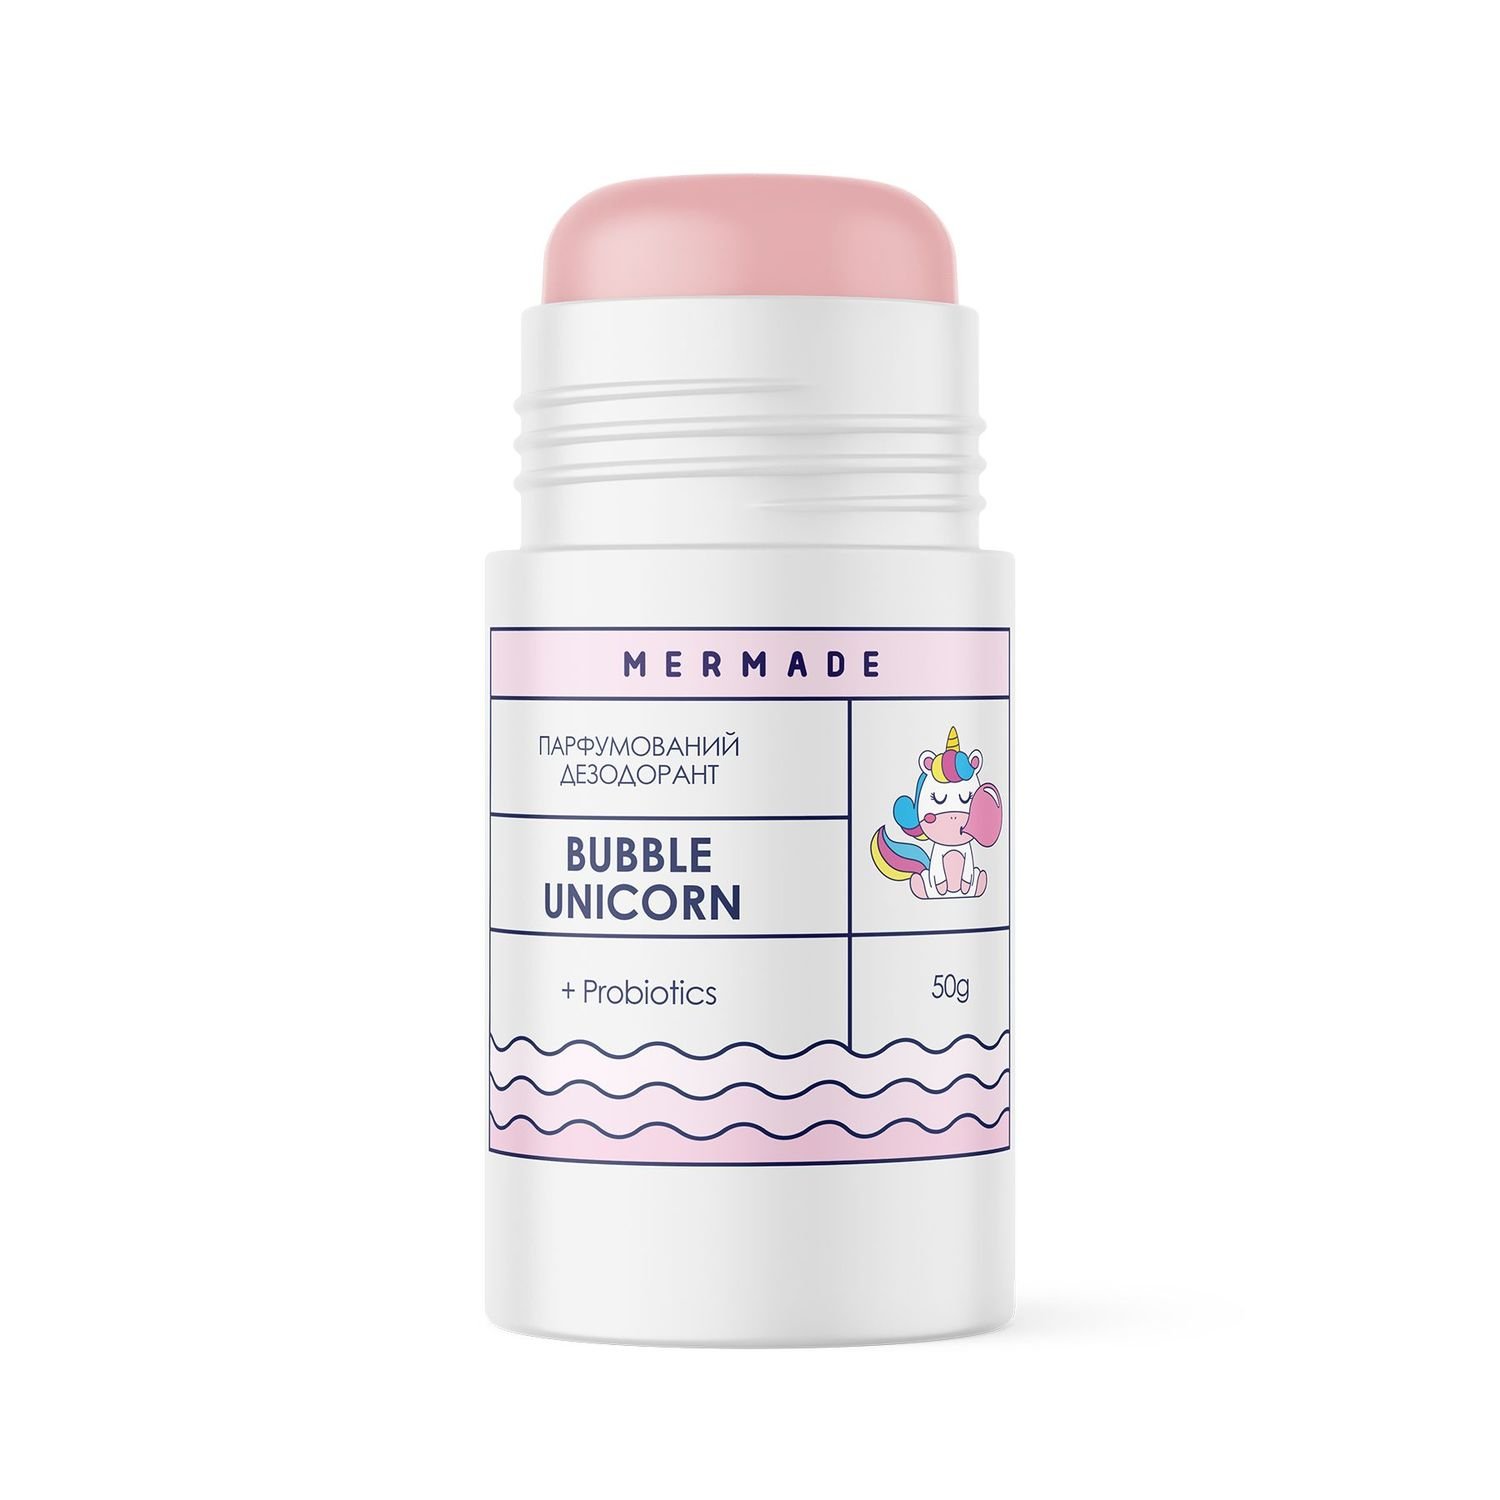 Парфюмированный дезодорант Mermade Bubble Unicorn, с пробиотиком, 50 г - фото 2